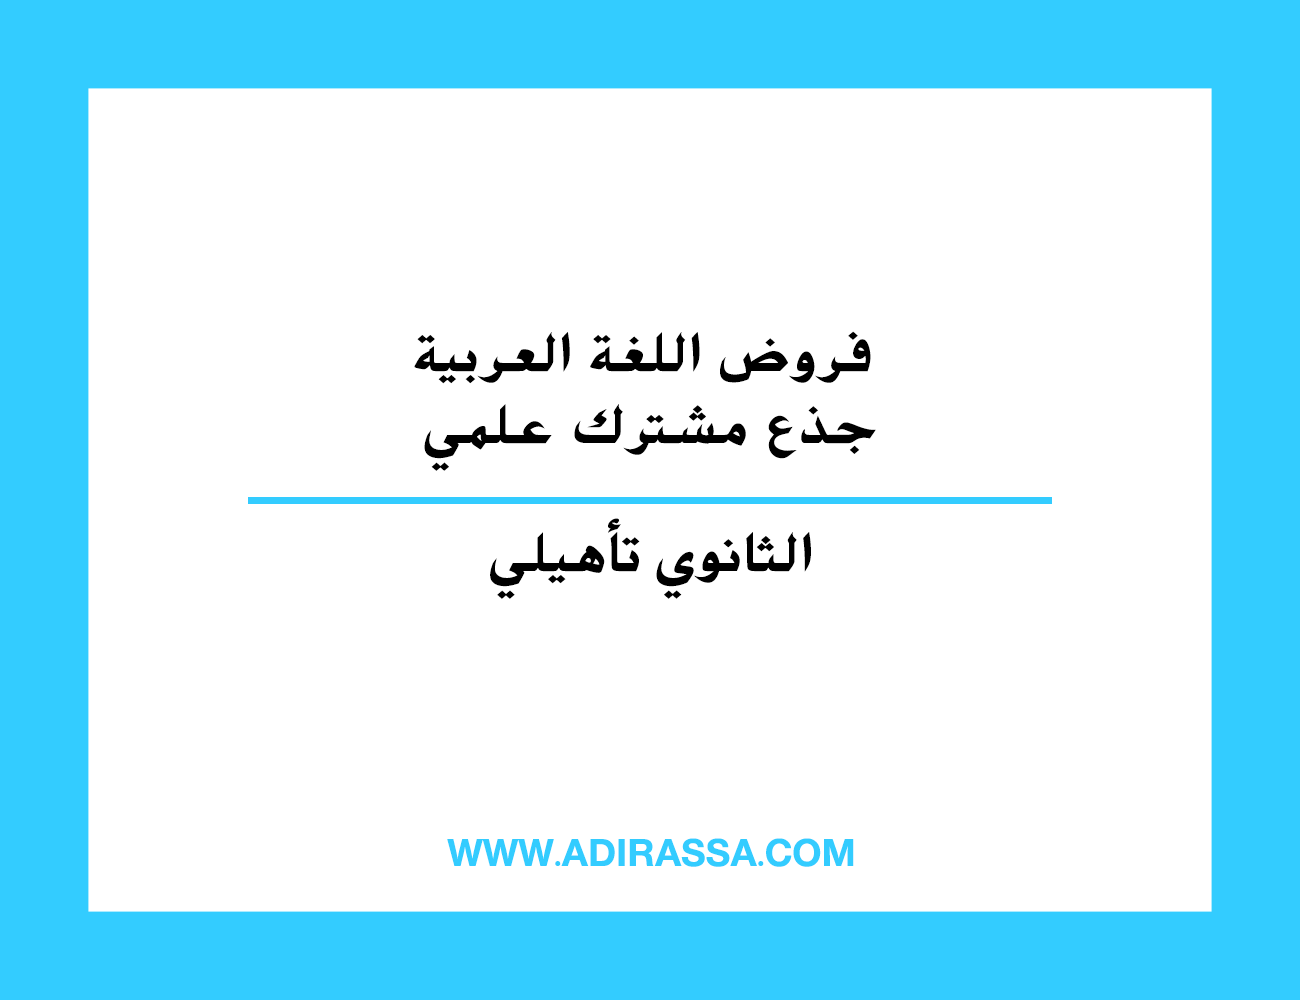 فروض اللغة العربية جذع مشترك علمي الخاصة بالدراسة بالتعليم الثانوي تأهيلي